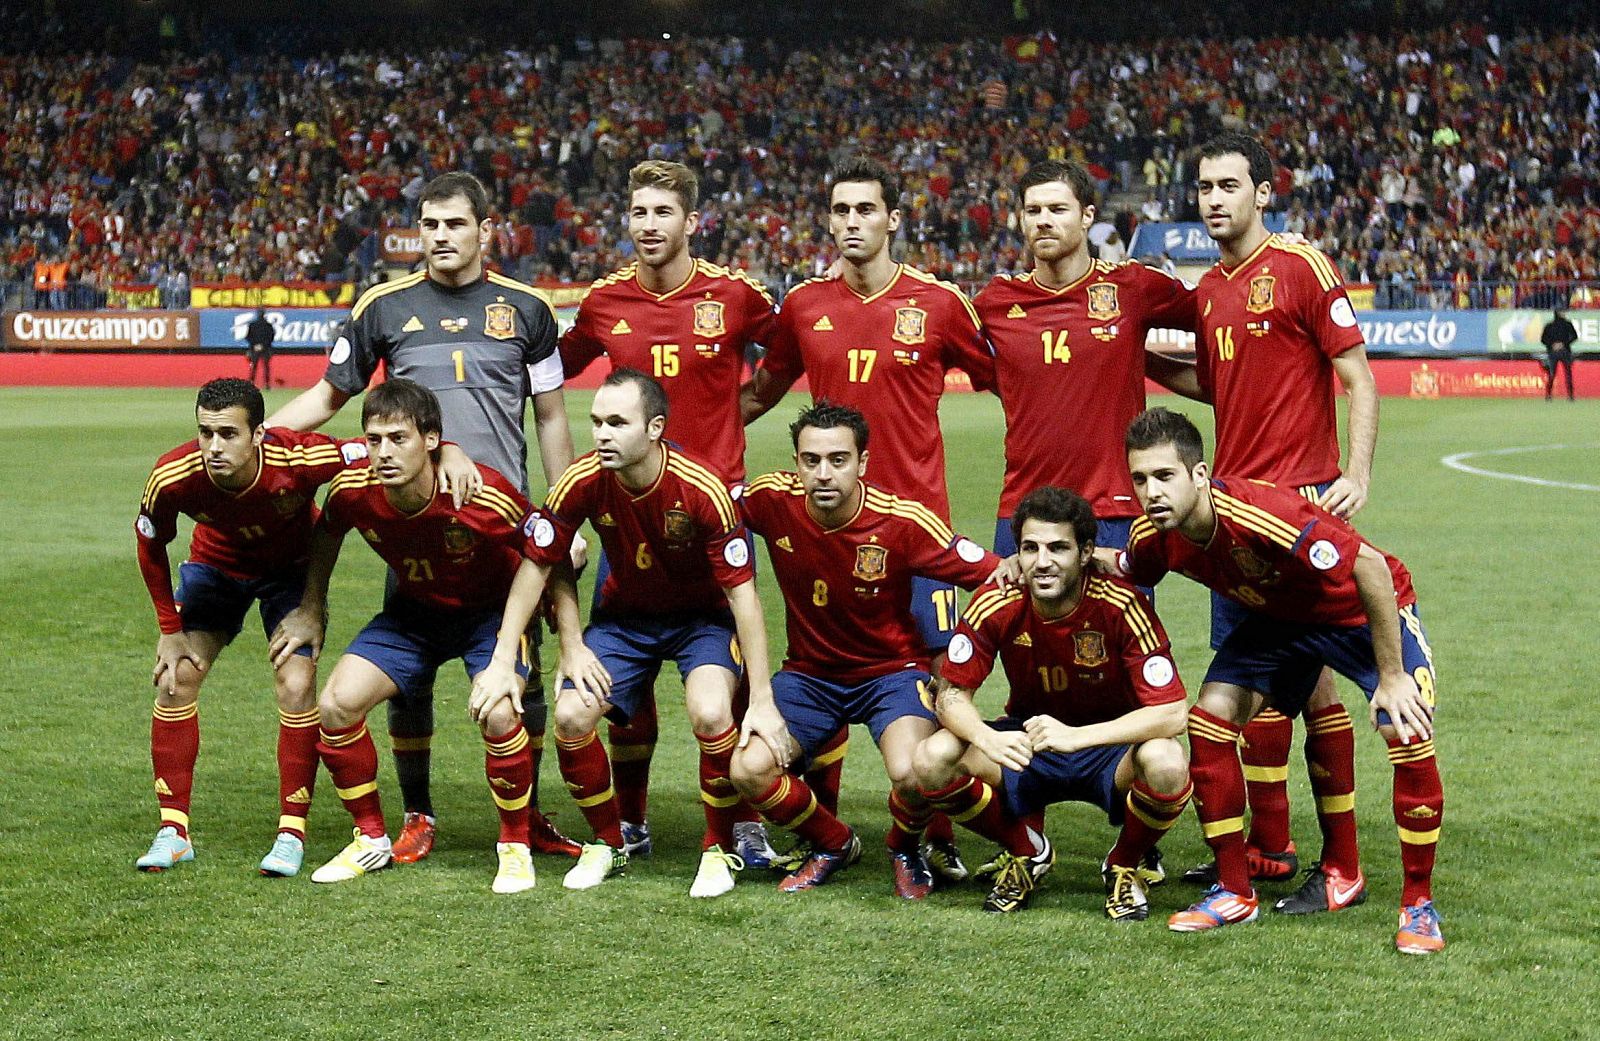 Los jugadores de la selección española posan formados momentos antes del inicio del partido.